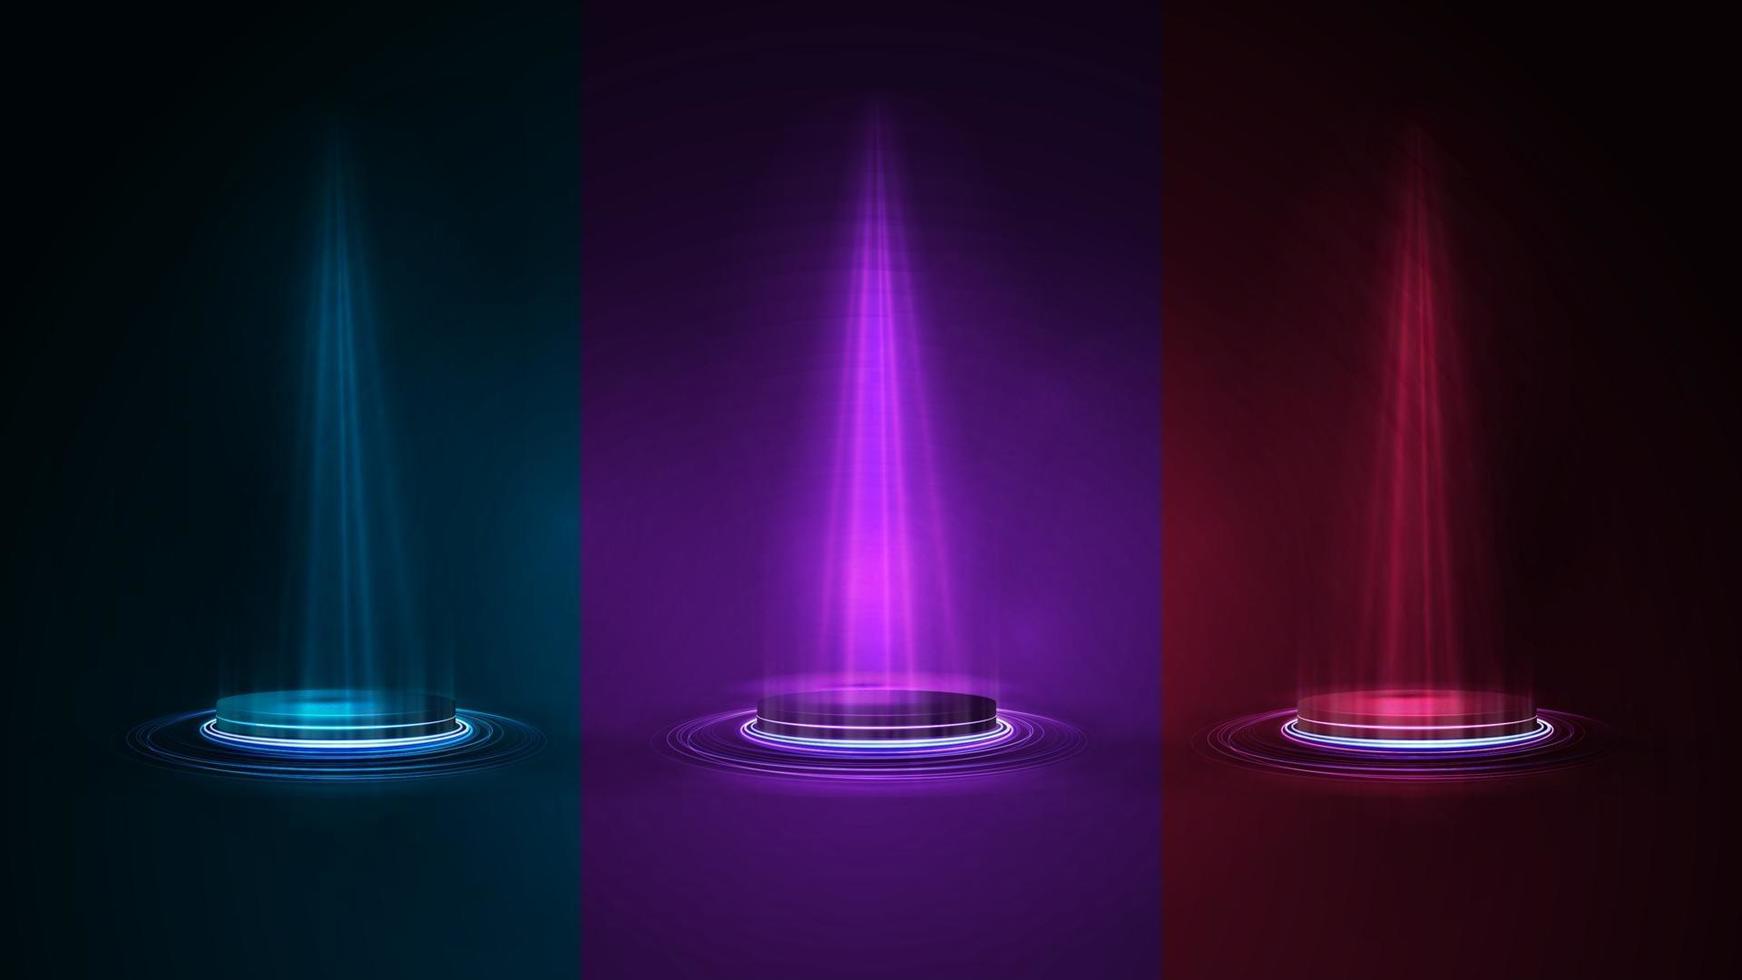 Satz leere blaue Podien für Produktpräsentation, realistische Neonillustration 3d. digitale Neonpodeste in Blau, Rosa und Rot mit Beleuchtung von Scheinwerfern in einem dunklen Raum vektor